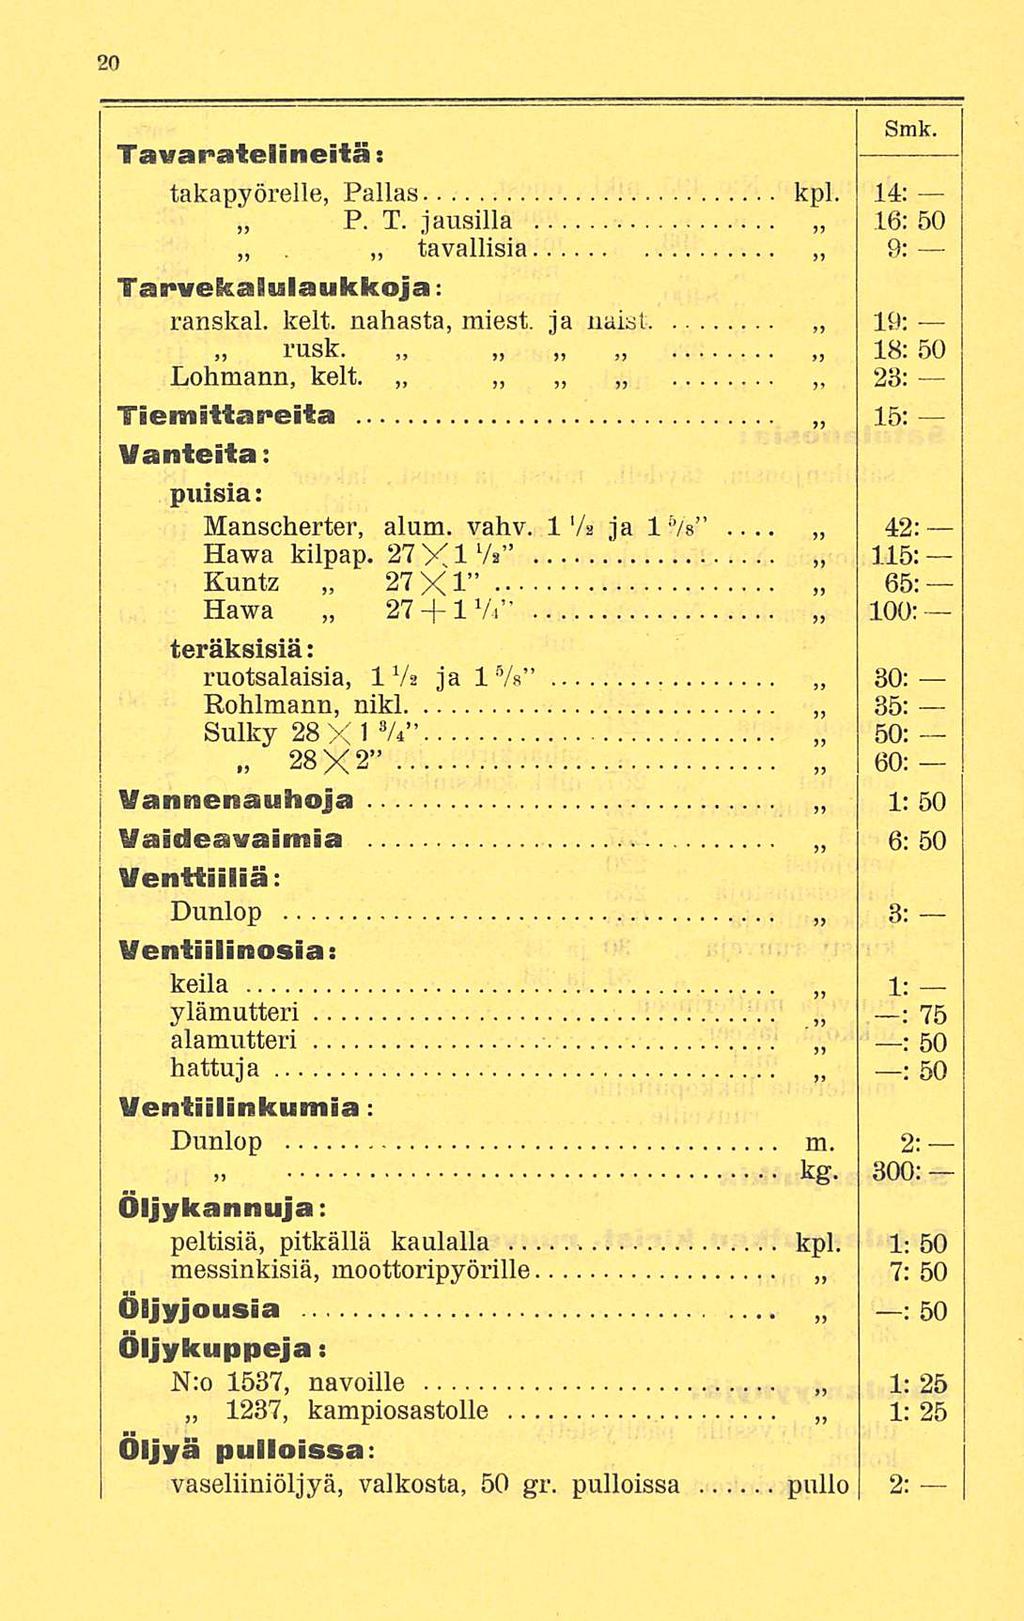 Smk. Tavaratelineitä: takapyörelle, Pallas kpl. 14; P. T. jausilla 16: 50 tavallisia Tarvekaiulaukkoja: ranskal. kelt. nahasta, miest. ja naisi rusk. Lohmann, kelt.